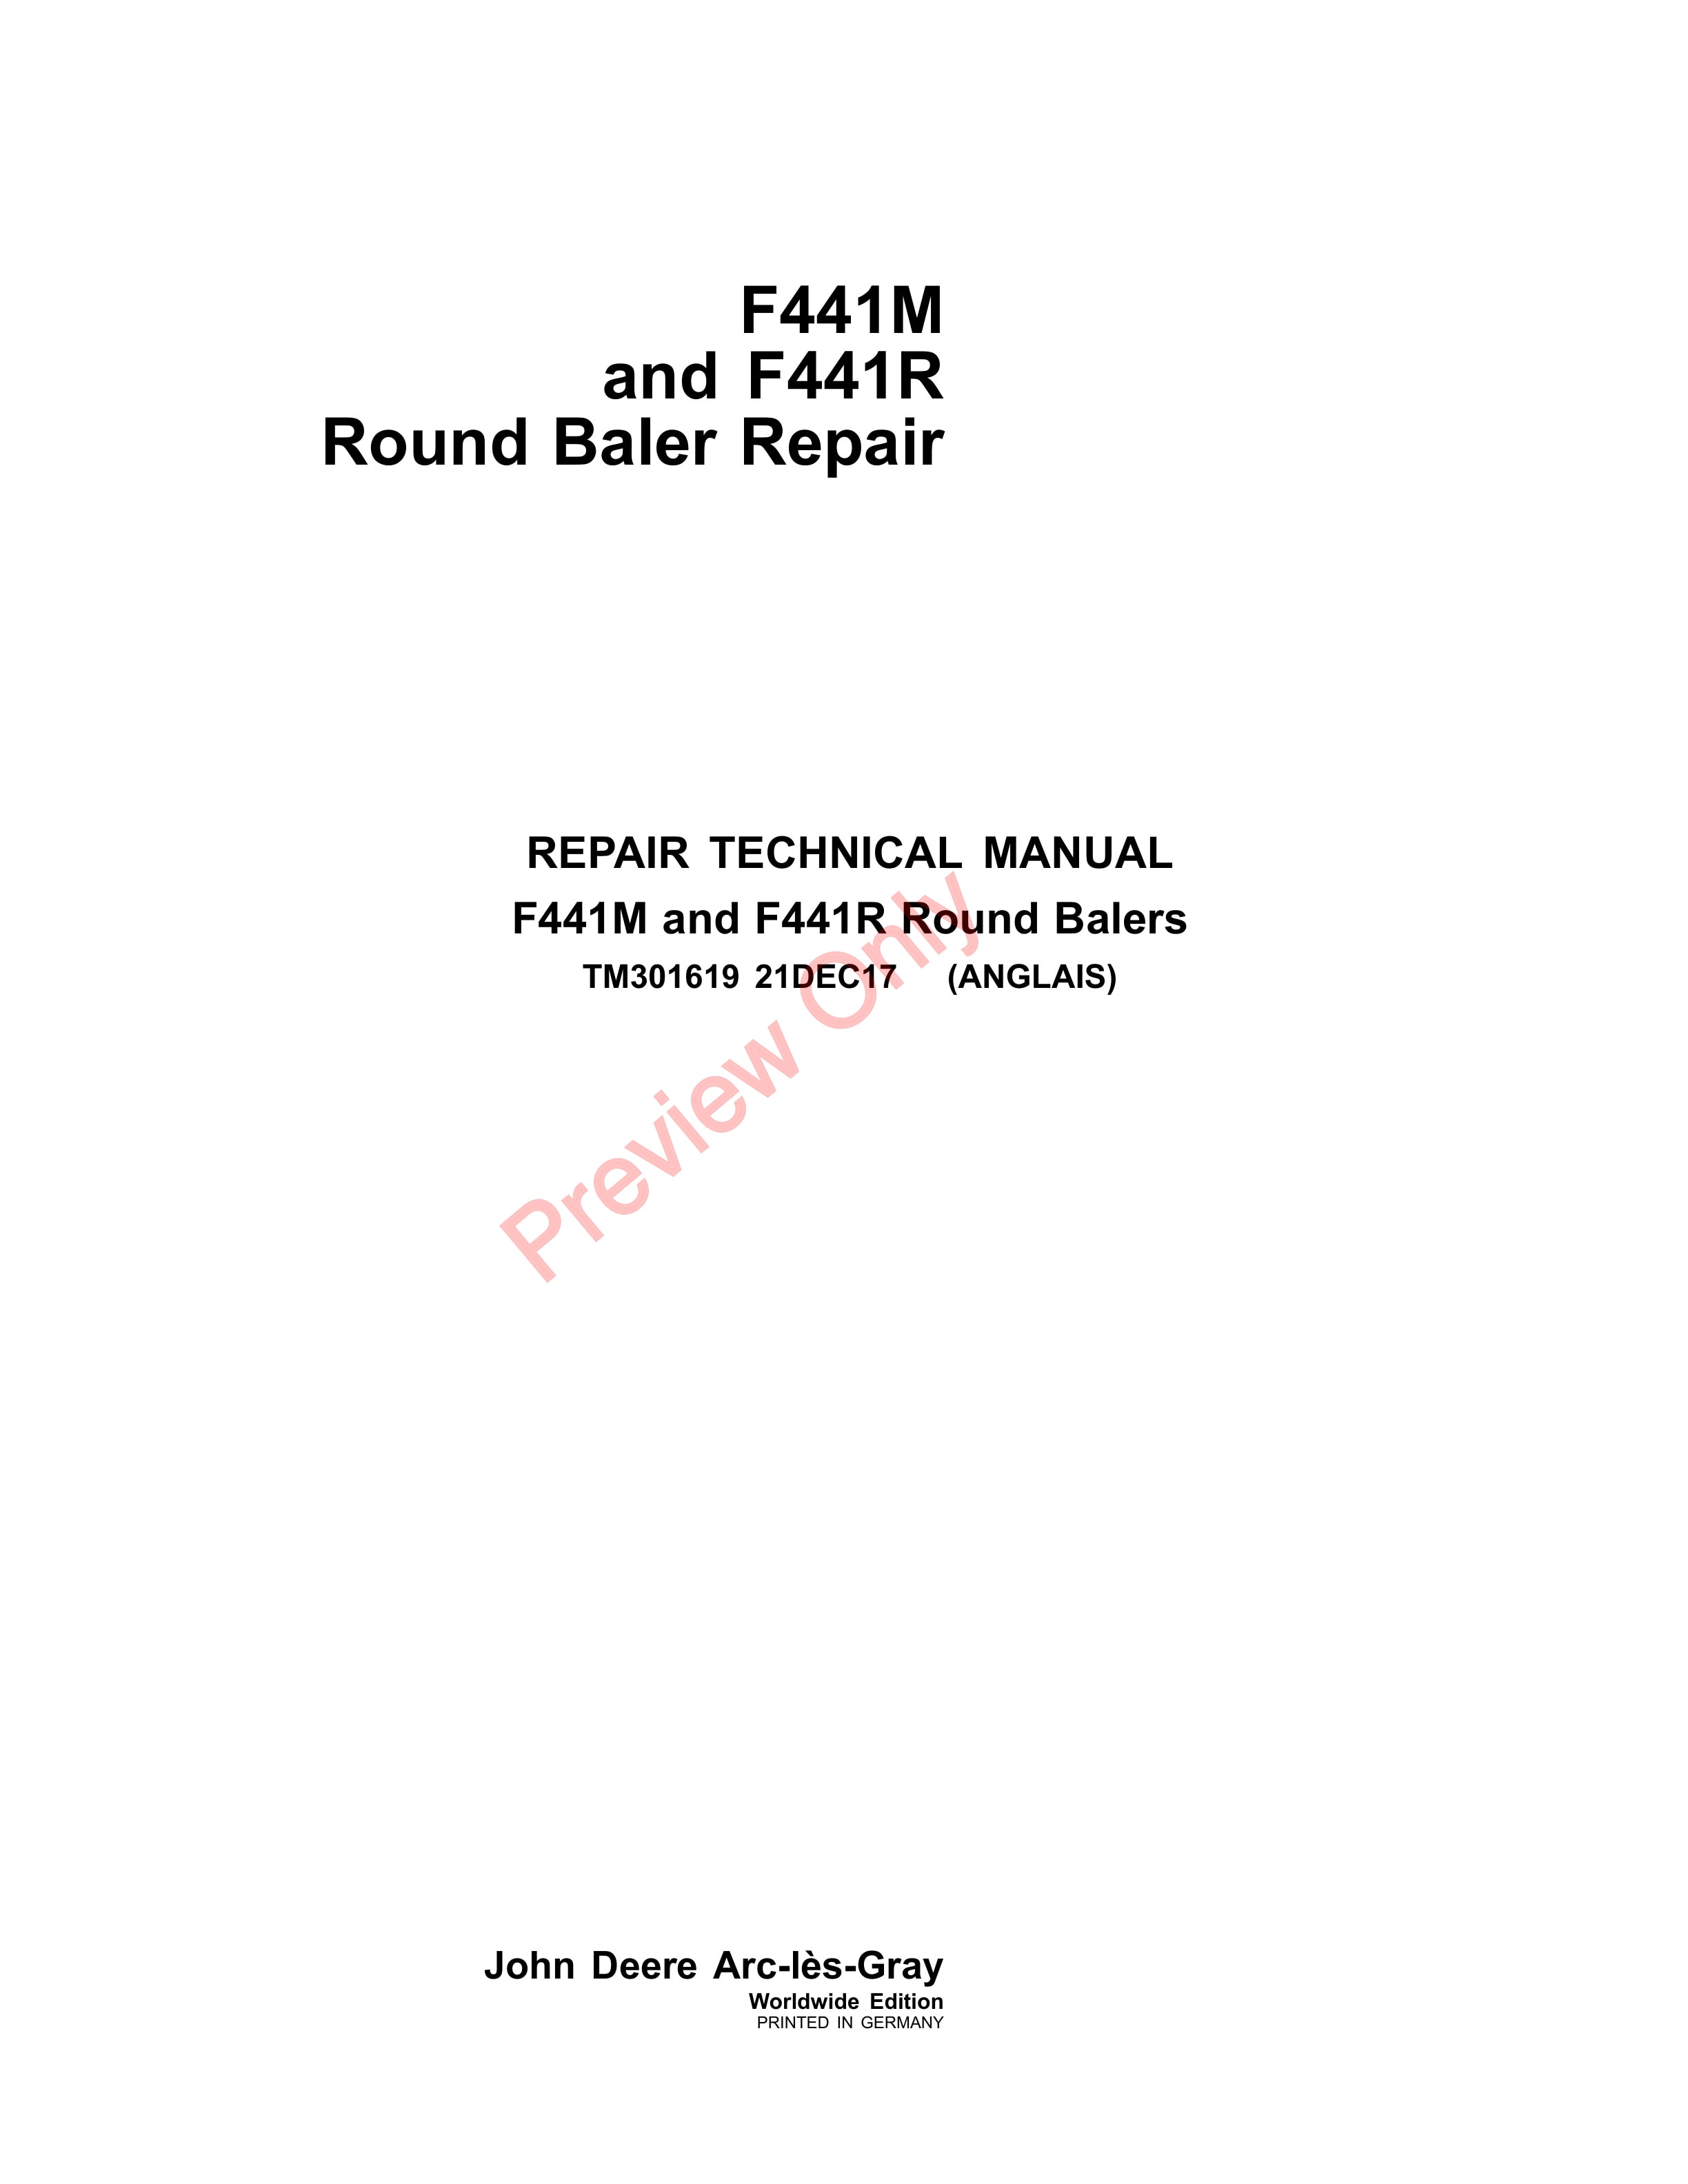 John Deere F441M and F441R Round Baler Repair Technical Manual TM301619 02MAY18-1